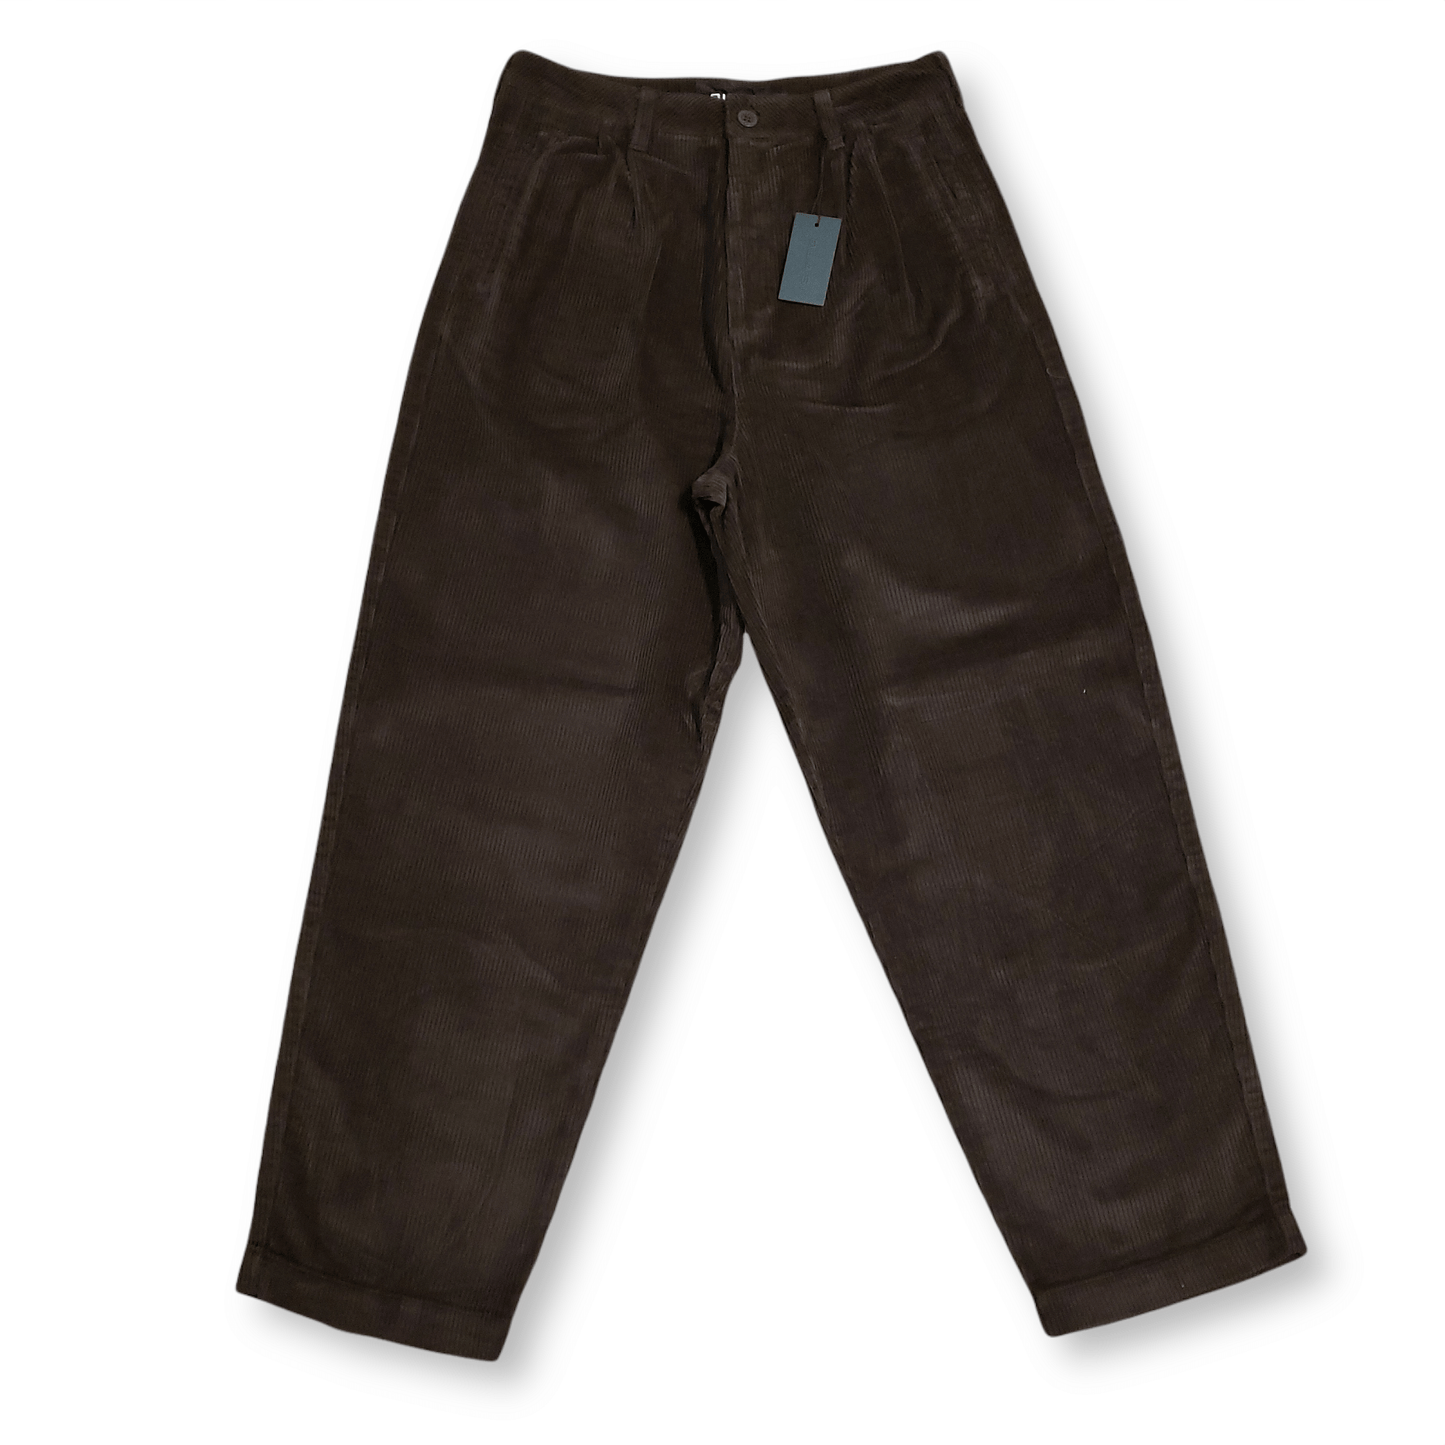 Quasi | Elliot Trouser Pant - Dark Brown